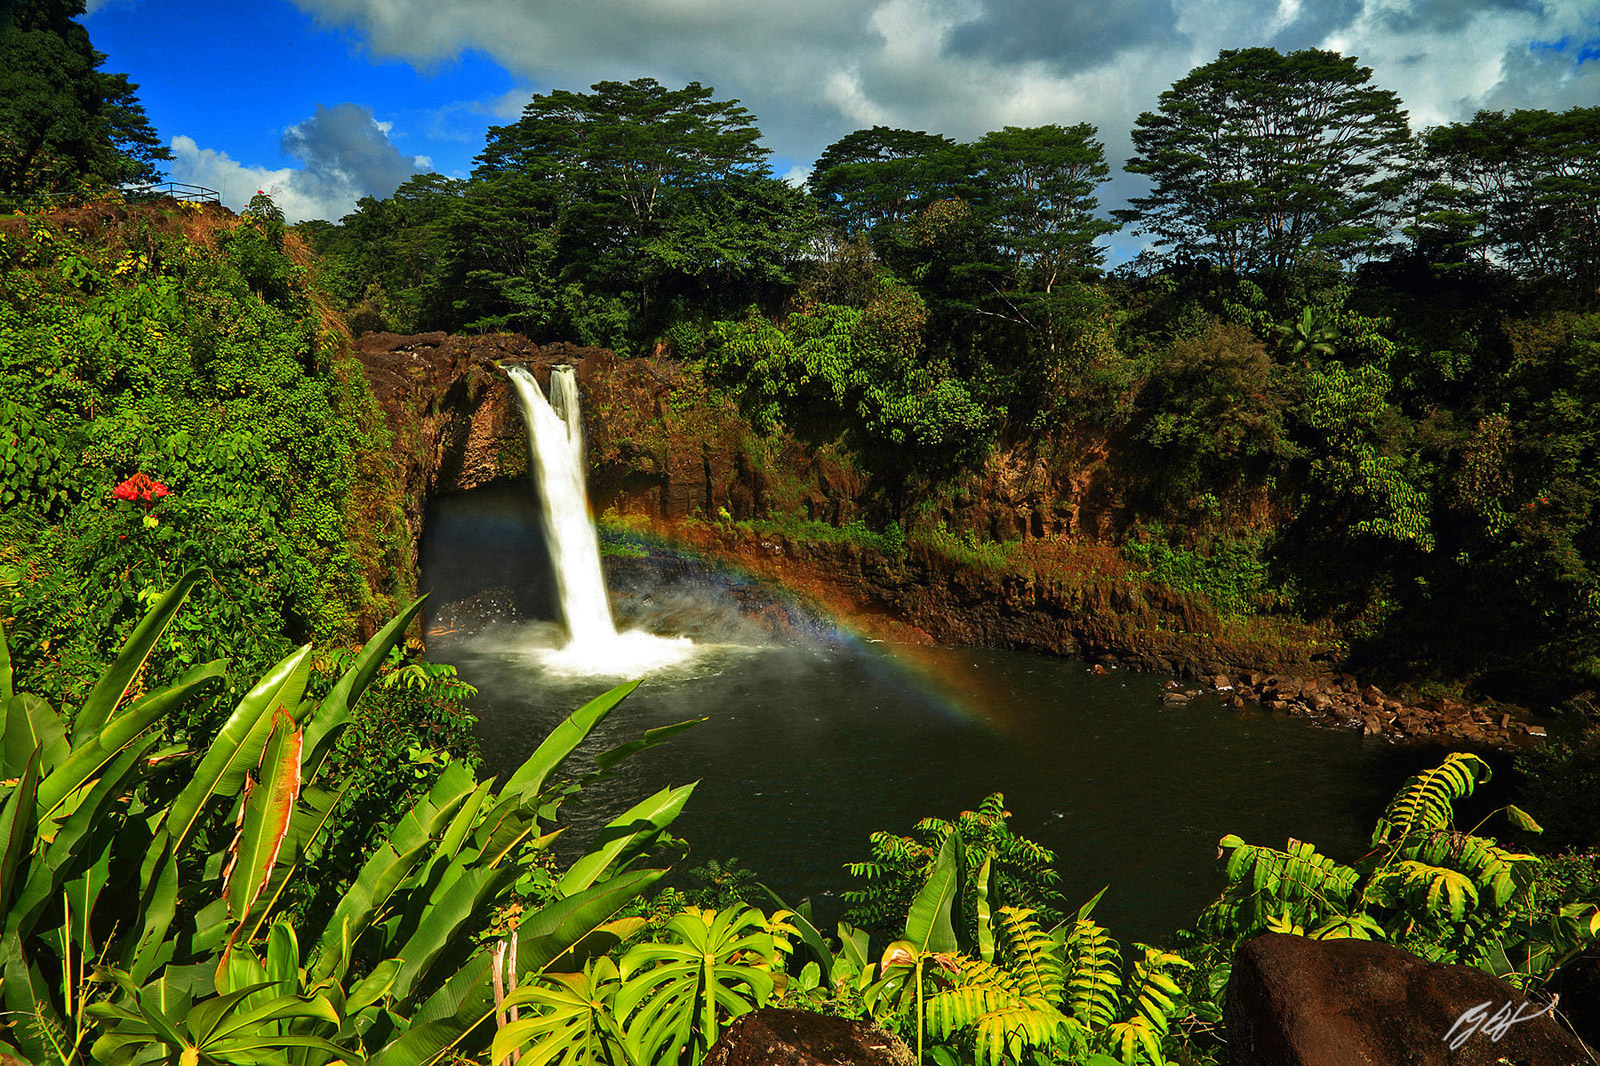 Rainbow in Rainbow Fall on the Big Island of Hawaii